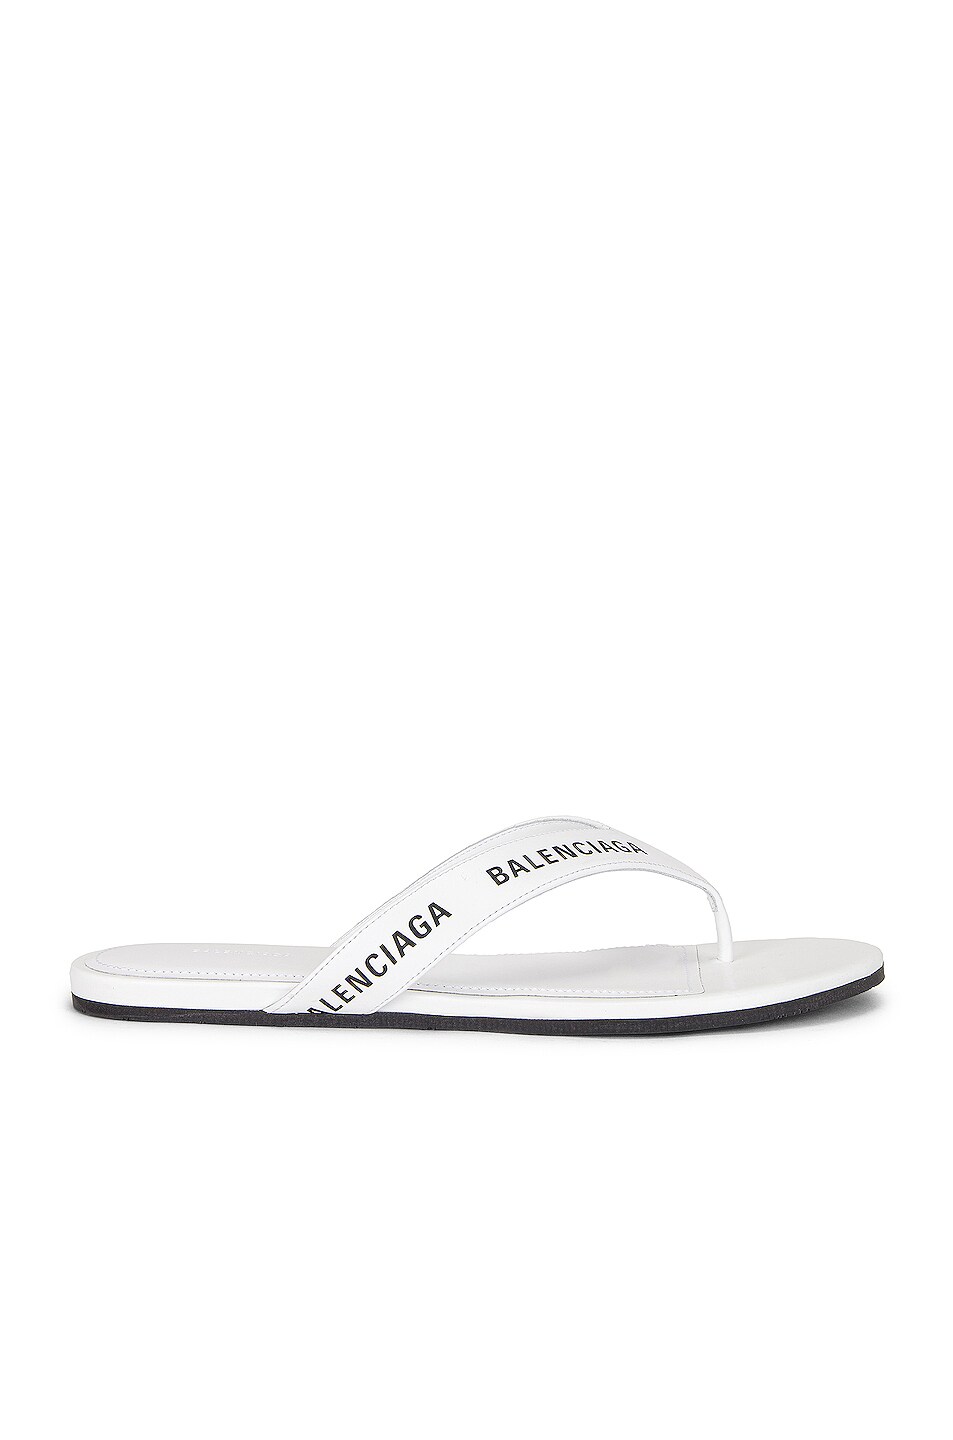 Balenciaga Round Flip Flop Sandals in White & Black | FWRD